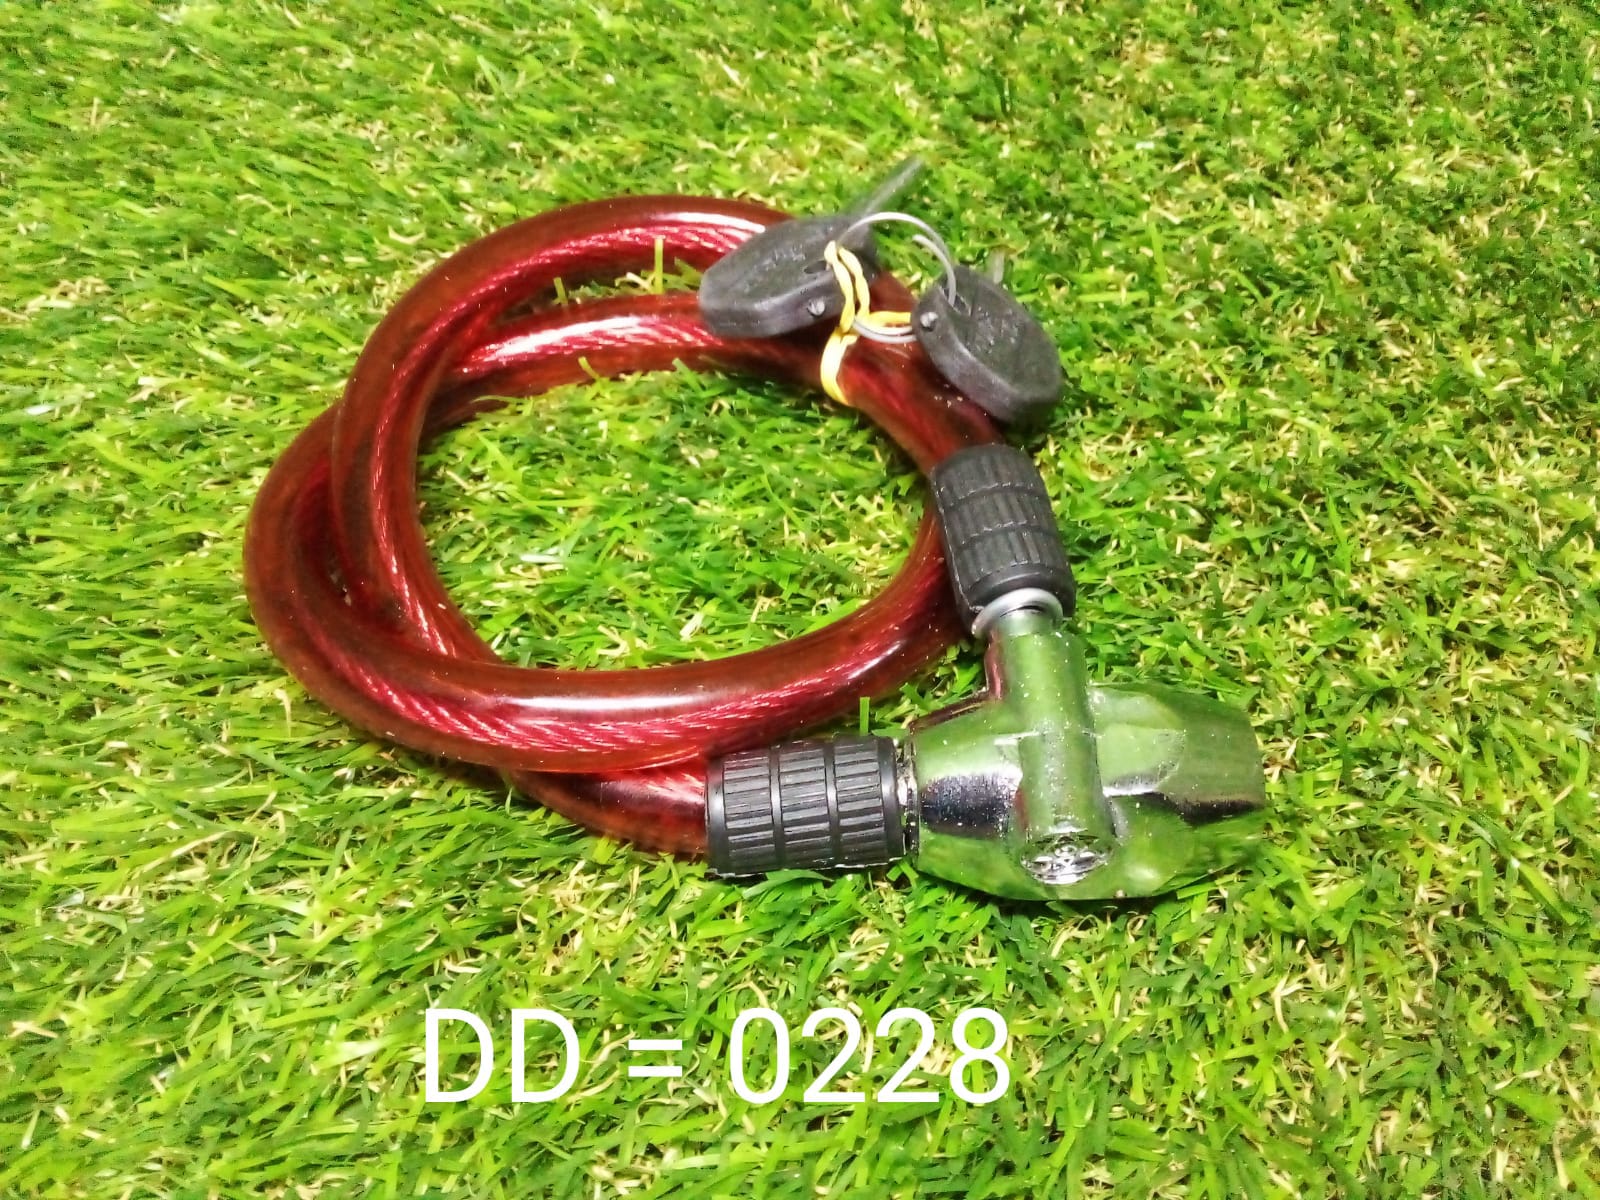 228 Multi Purpose Key-Lock DeoDap